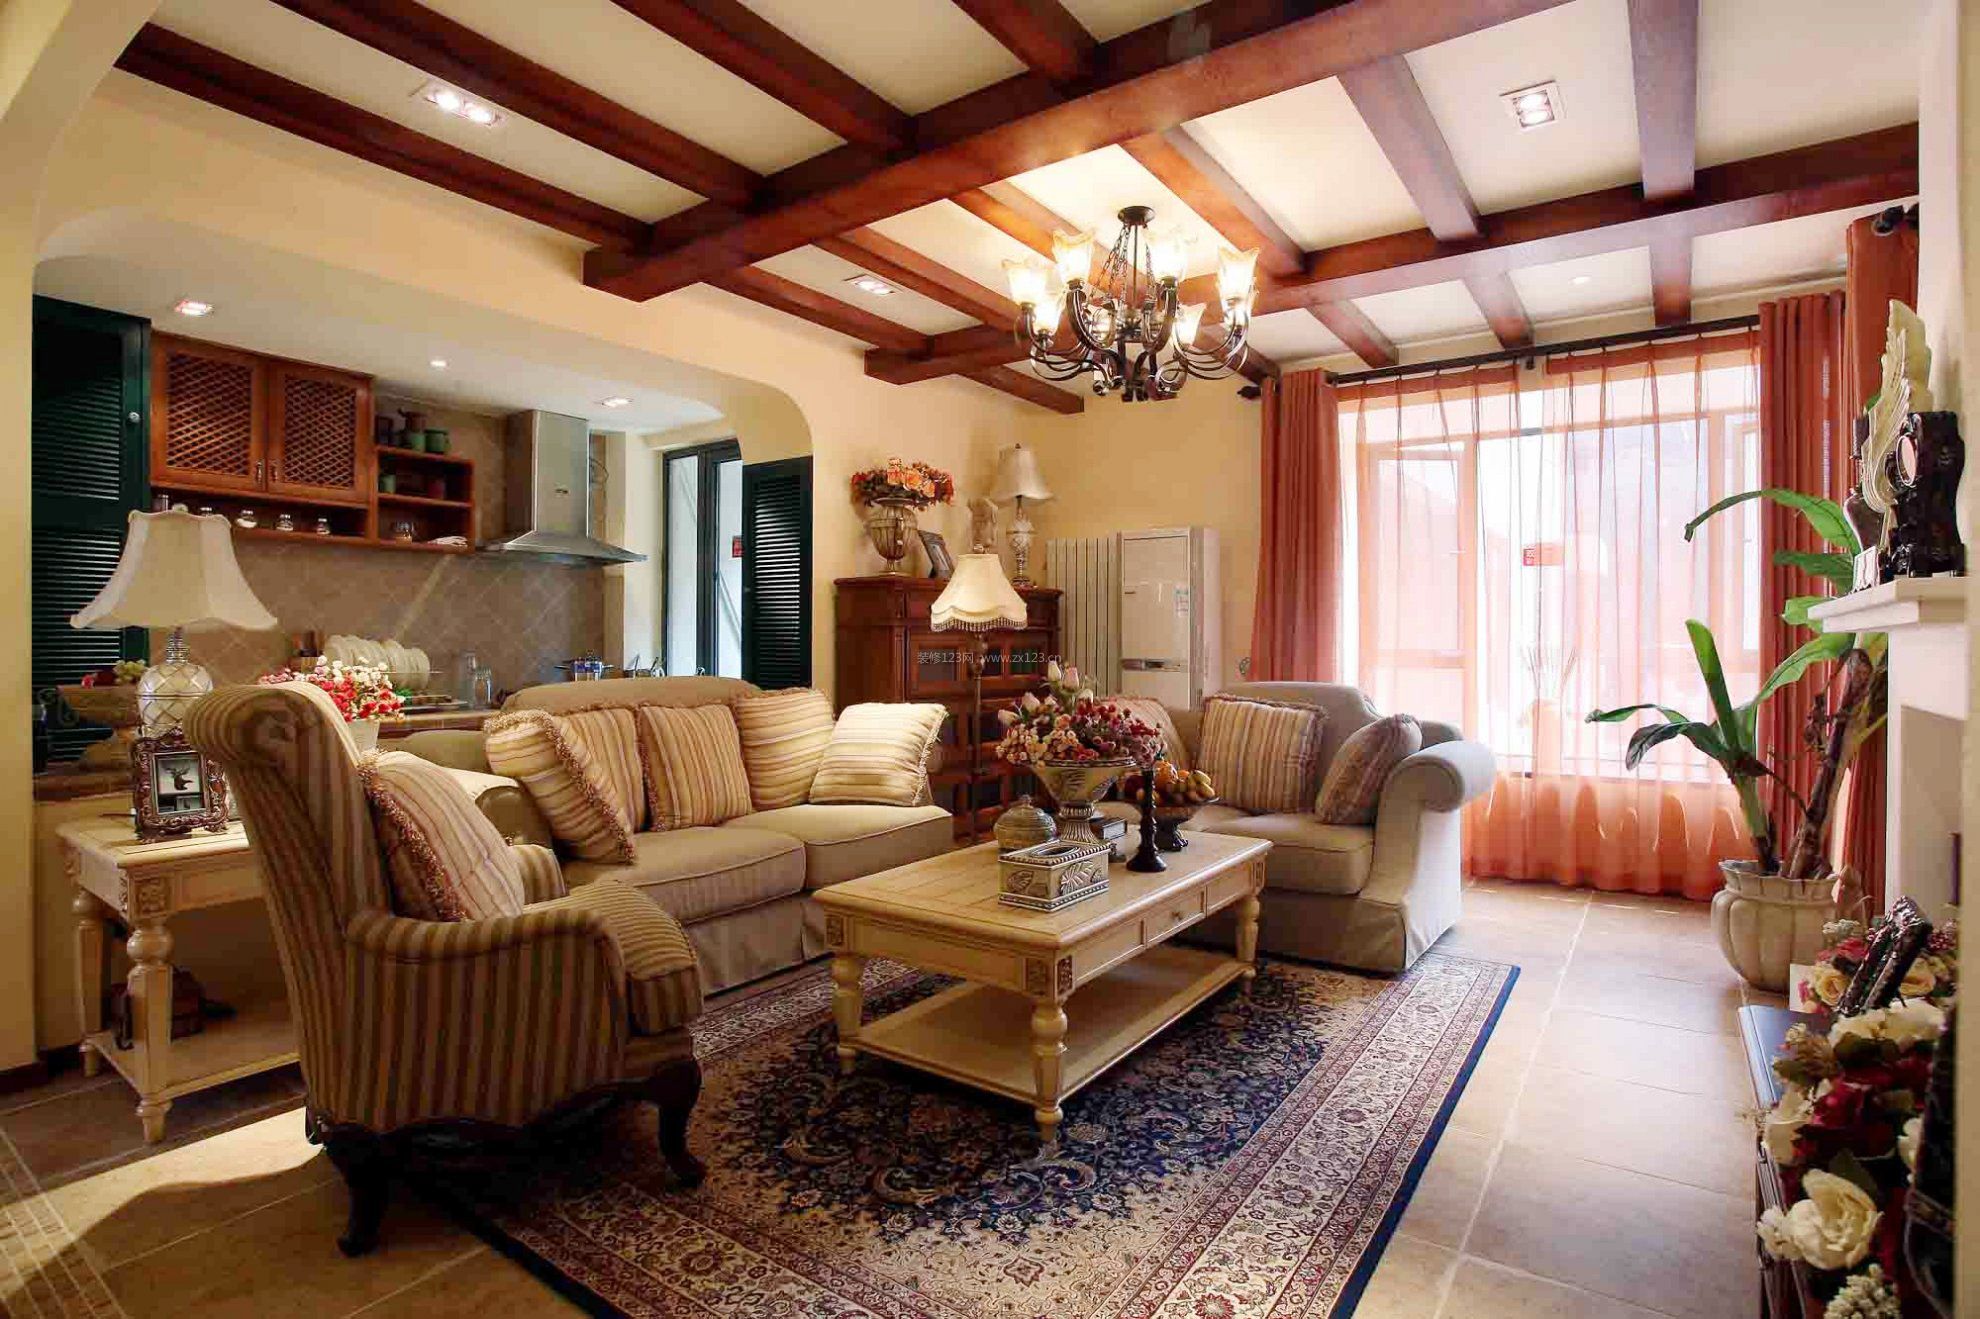 小洋房别墅美式风格客厅波斯地毯设计图片